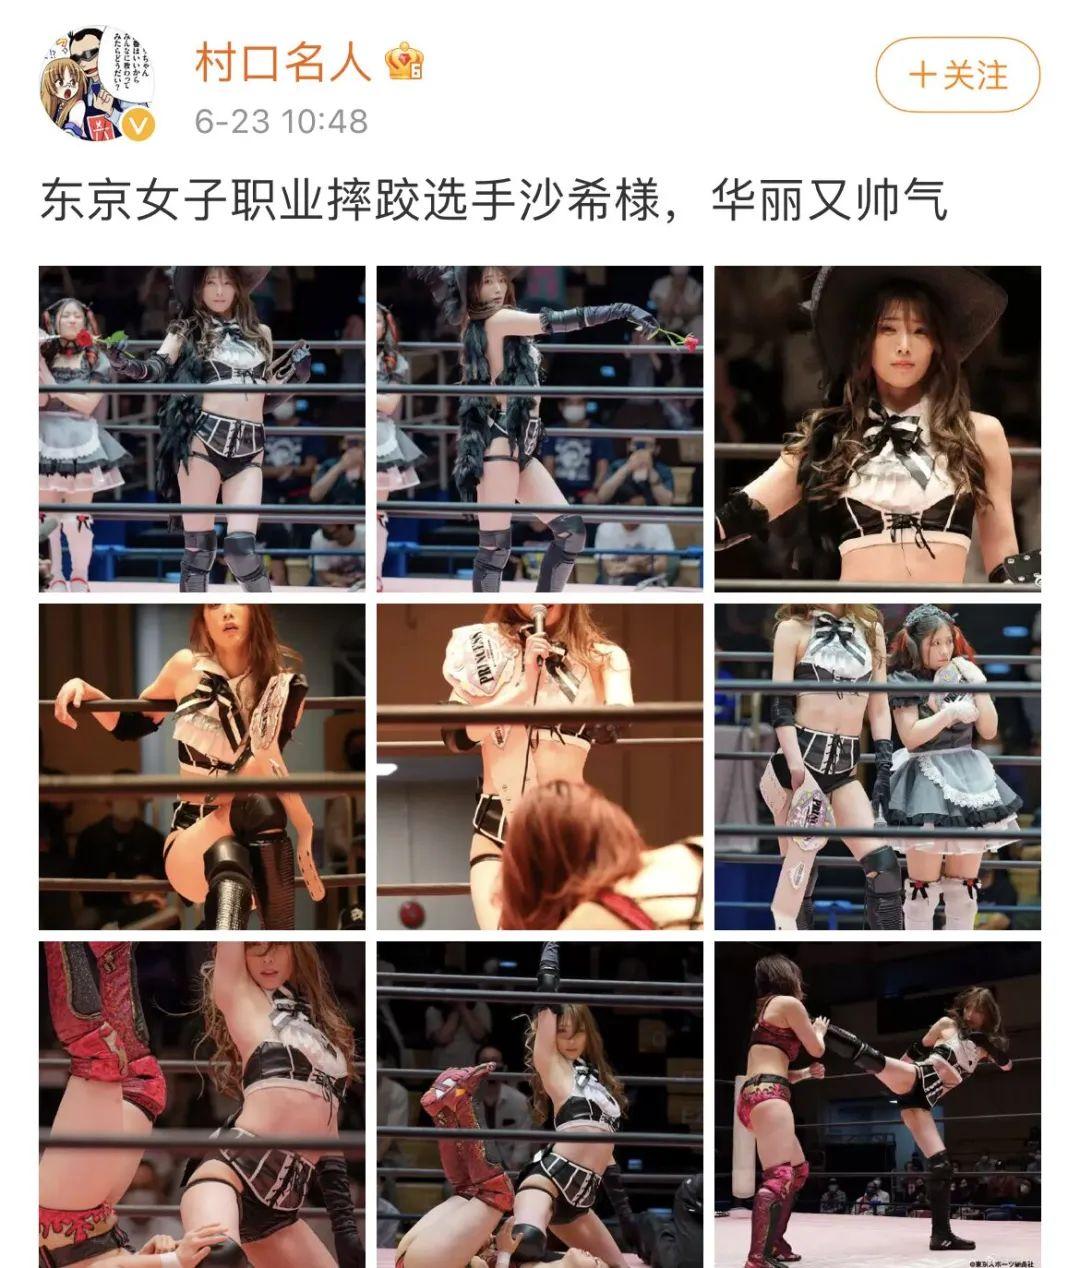 日本美少女摔角手赤井沙希，这赛场风姿，真是难顶啊！_图片 No.1